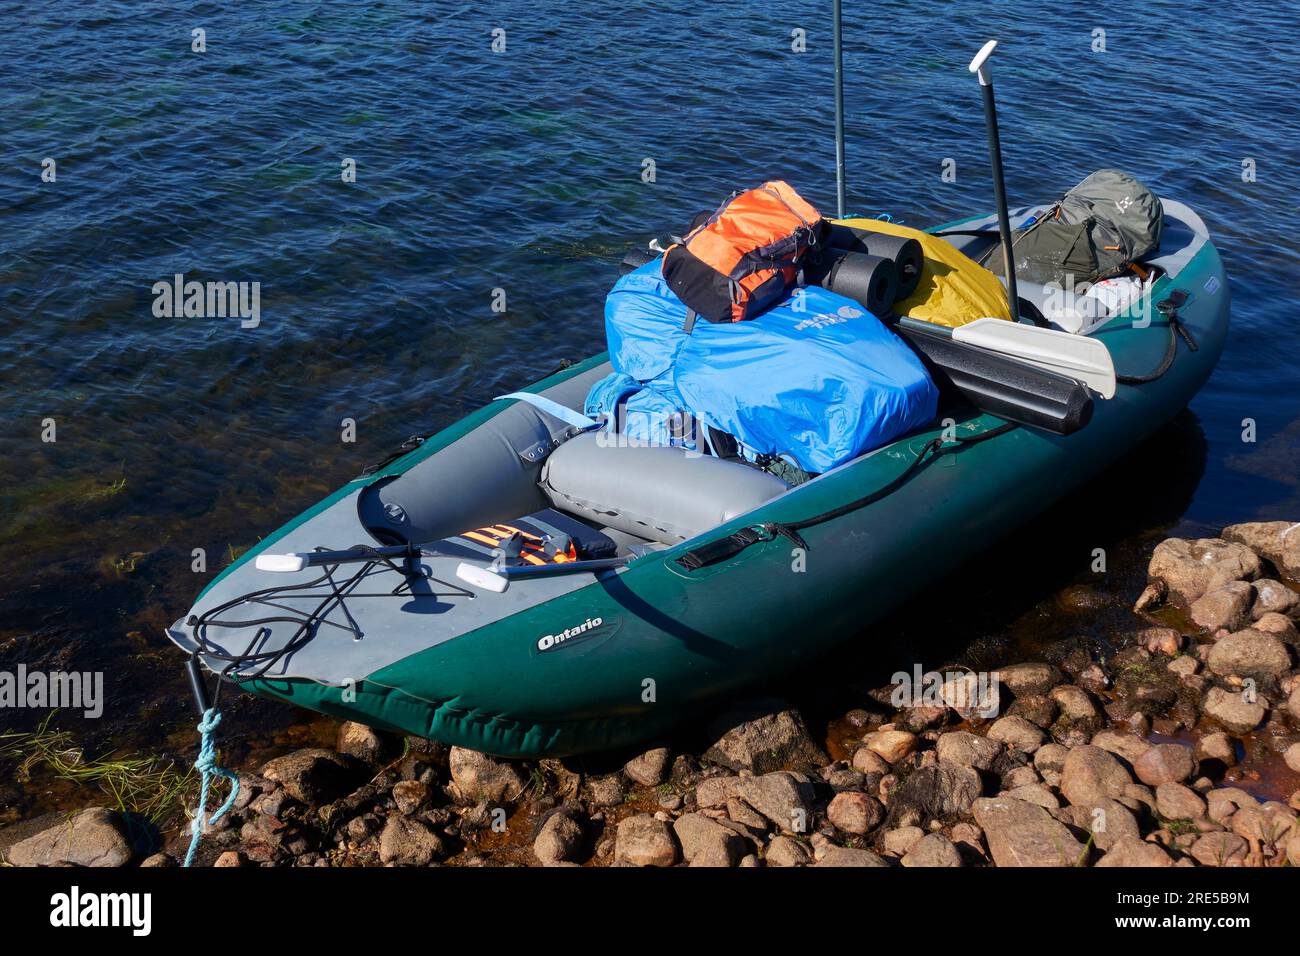 Kiiruna, Svezia - 19 luglio 2022: Zattera gonfiabile, attrezzatura completa e pagaie lungo il fiume Lainio nella Lapponia svedese. Foto Stock